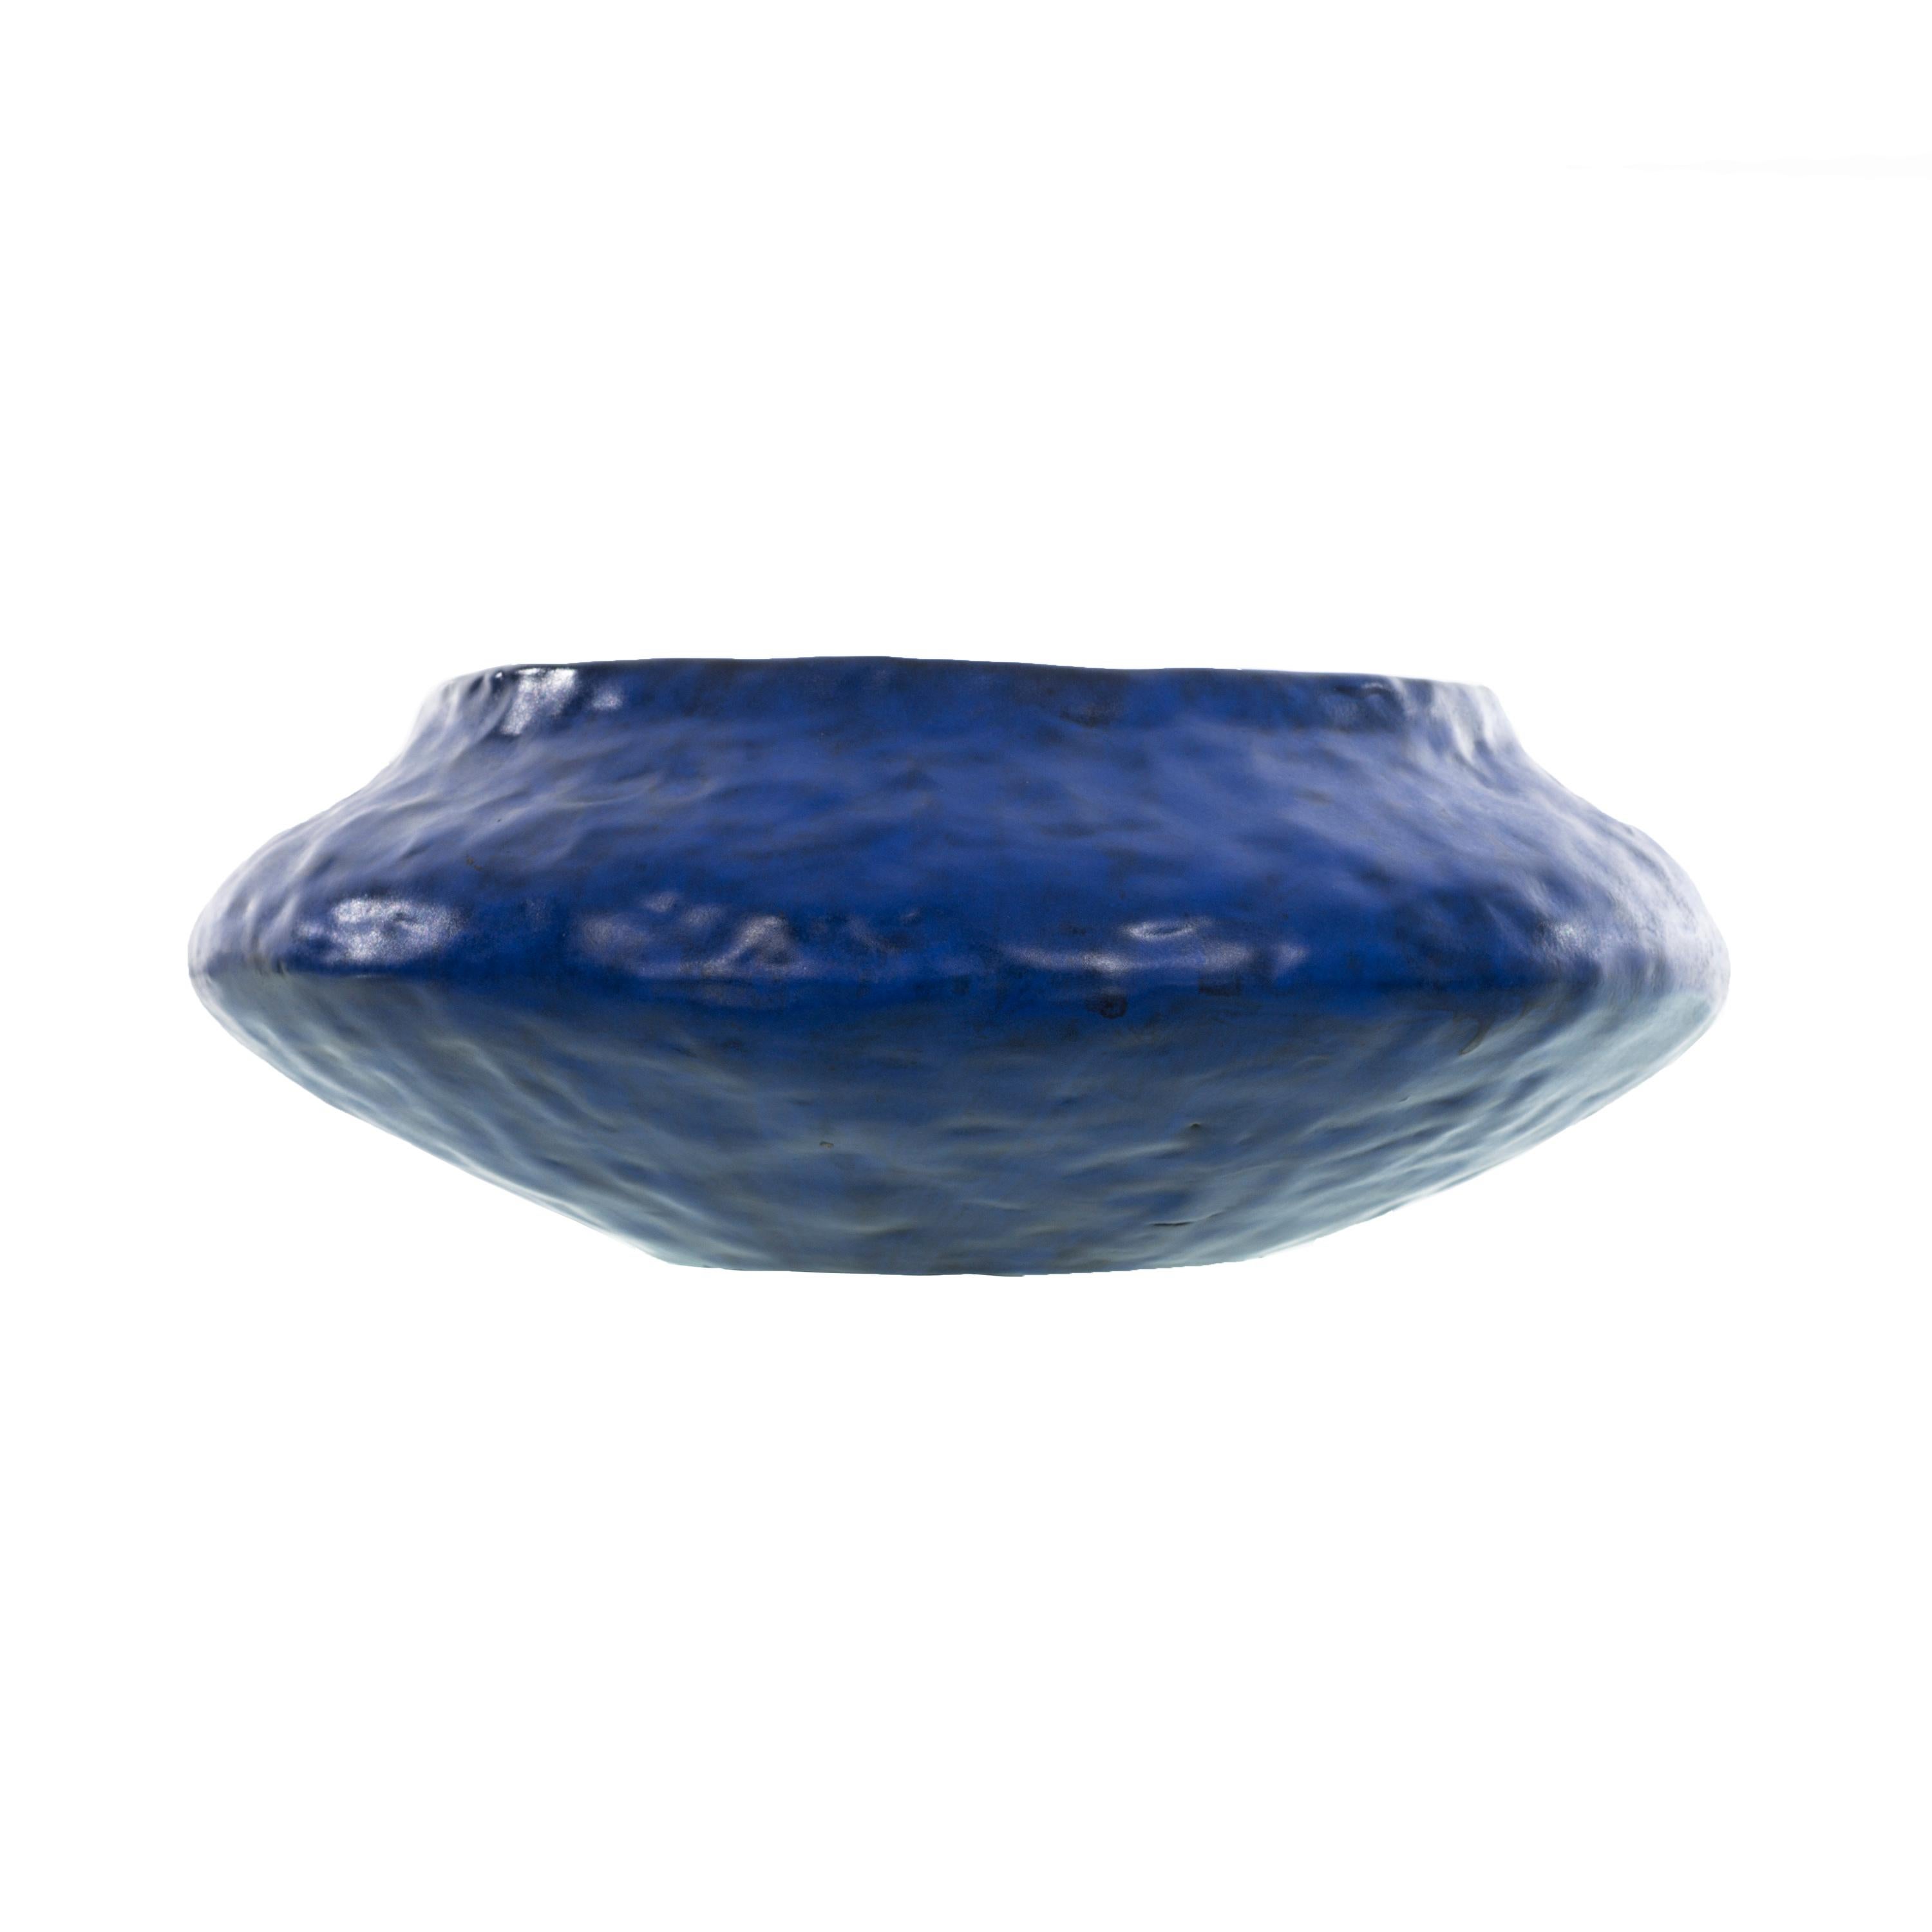 Marchello Fantoni Vibrant Blue Bowl For Sale